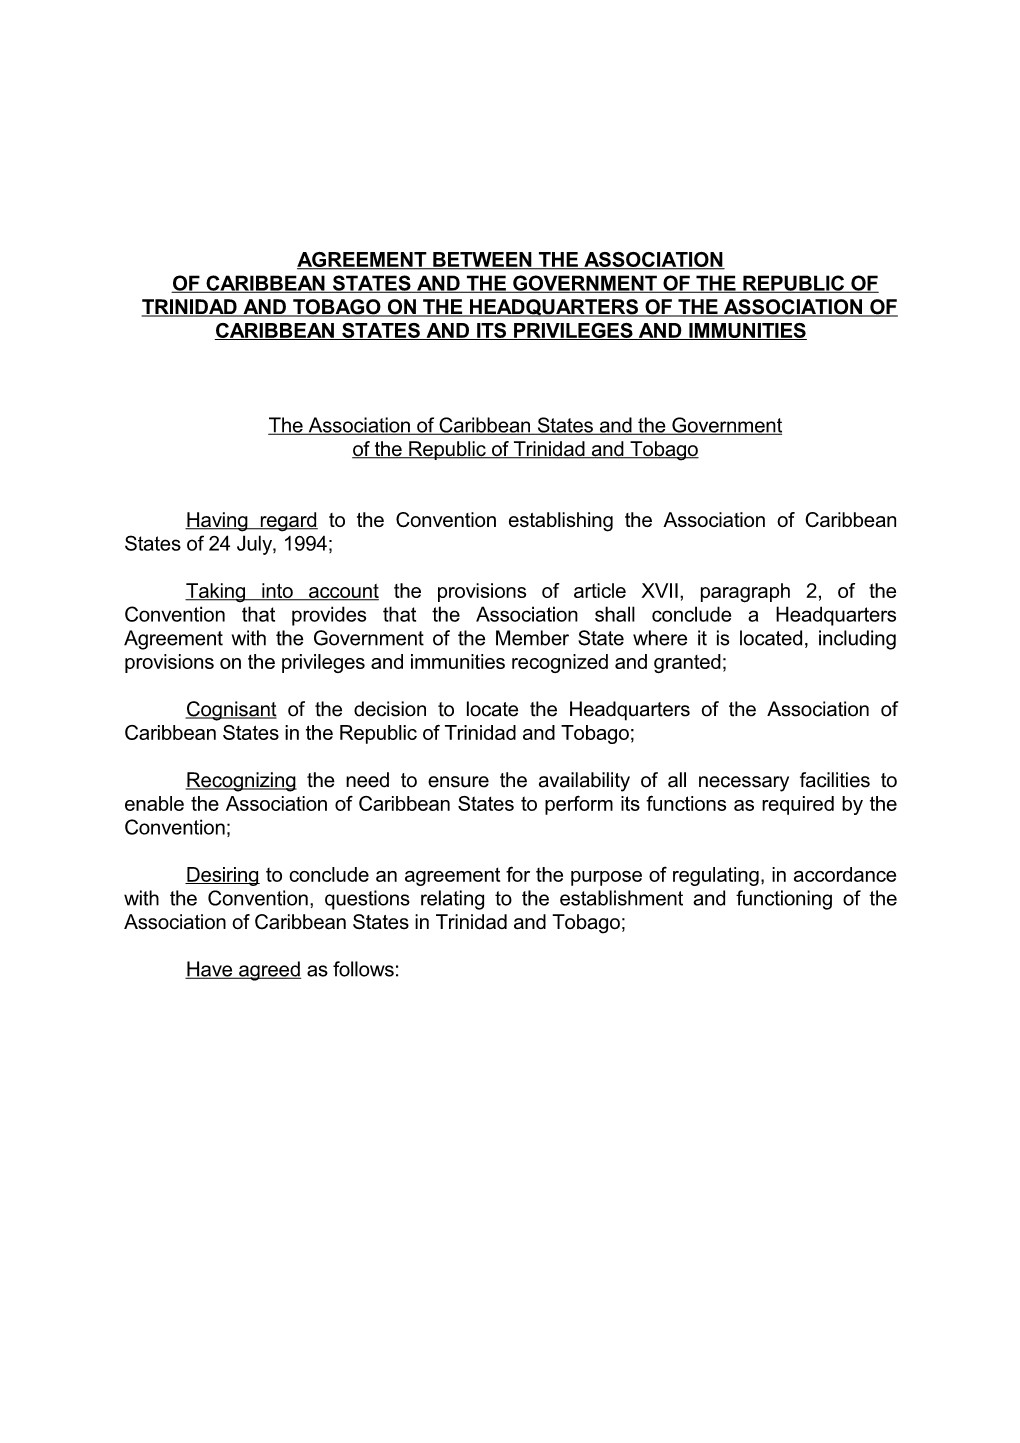 Agreement Between the Association